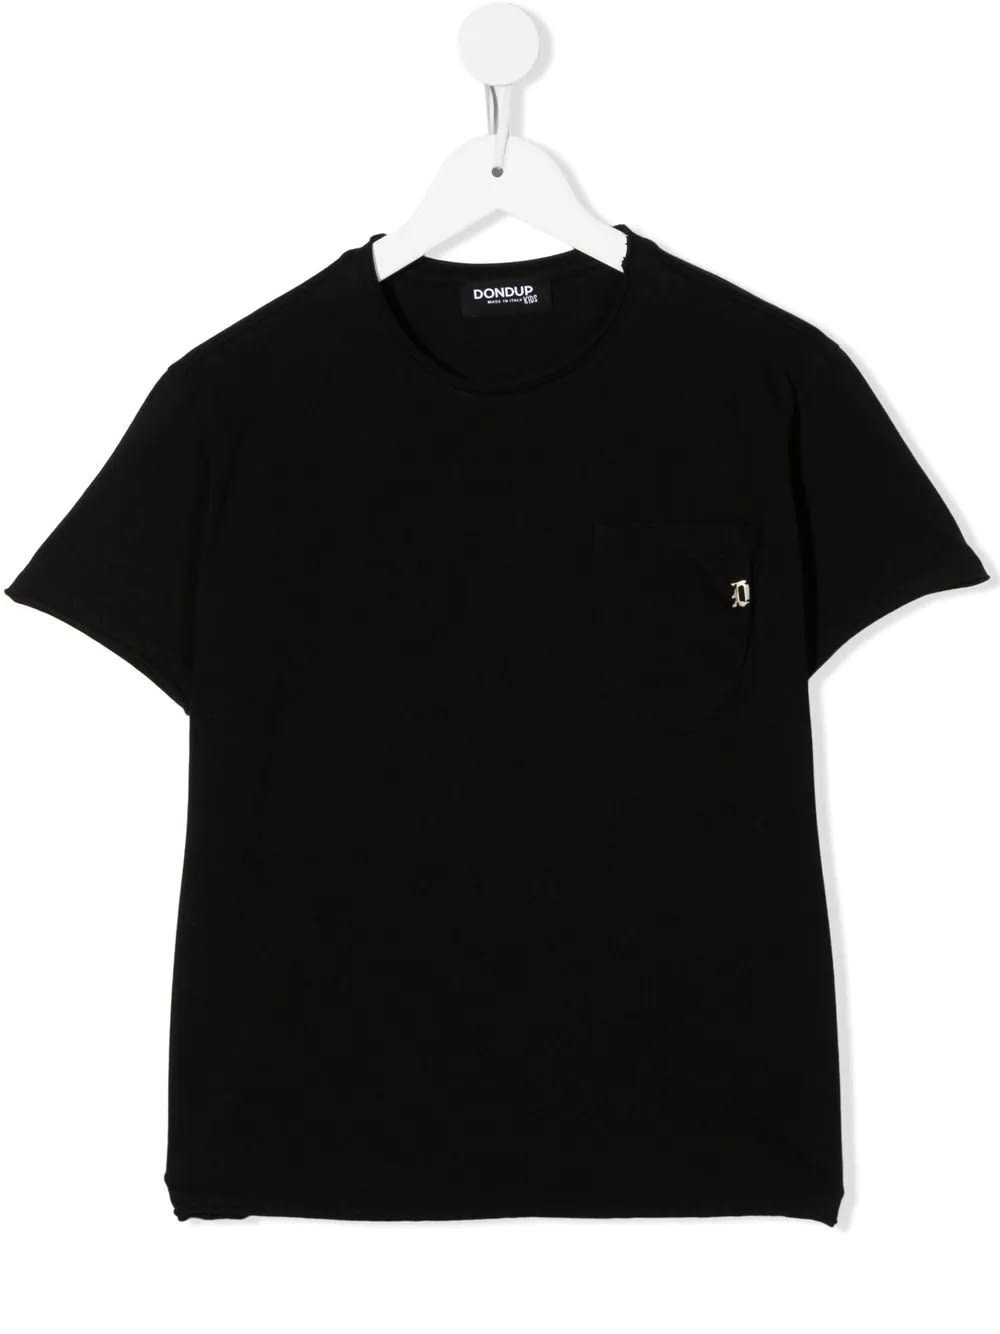 Dondup Kids Black T-shirt With Logo